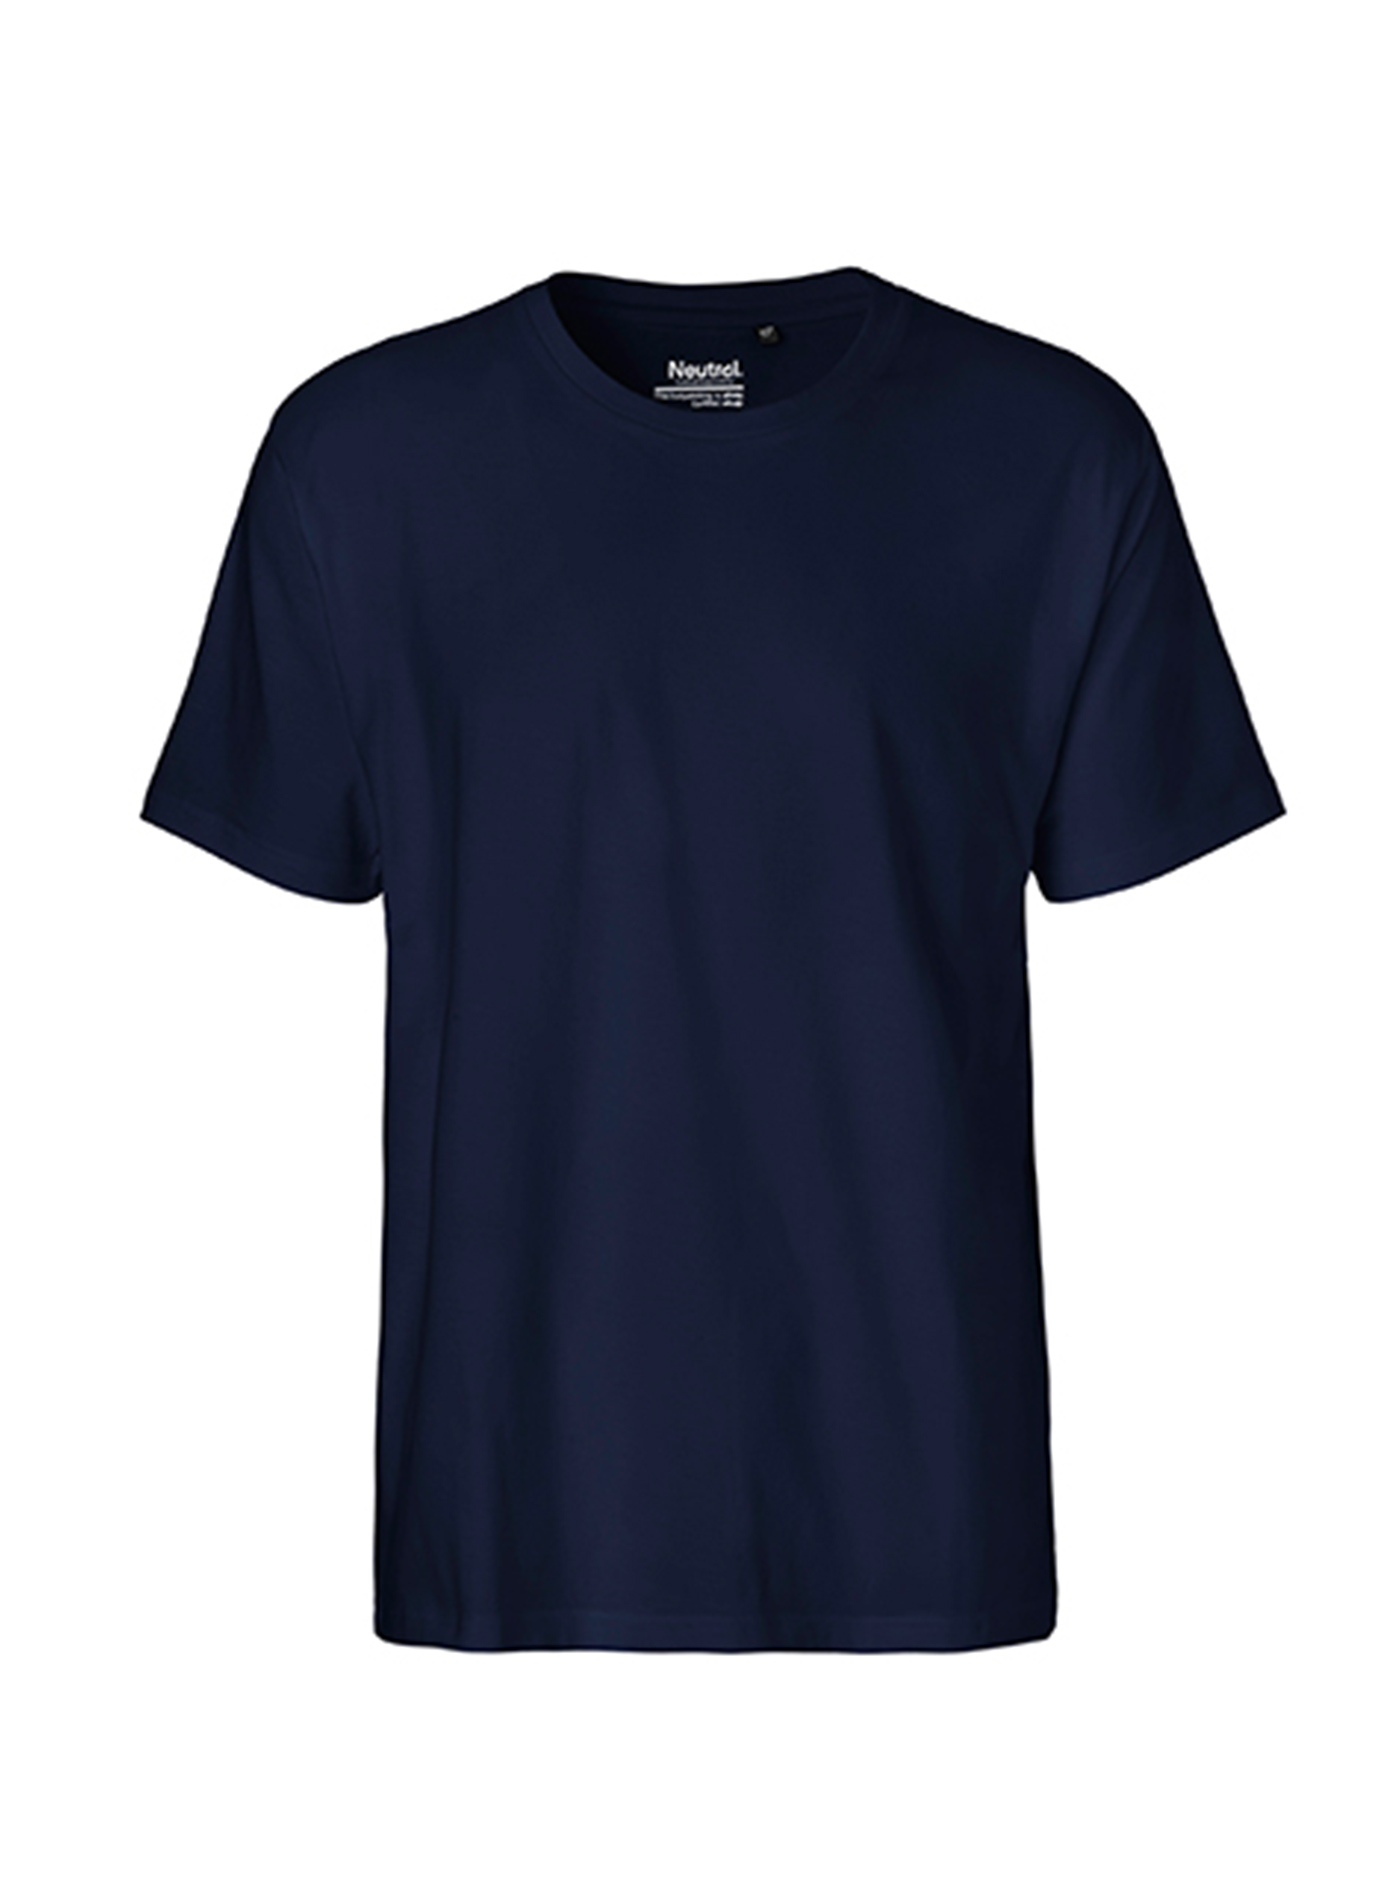 Pánské tričko Neutral Classic - Námořní modrá L